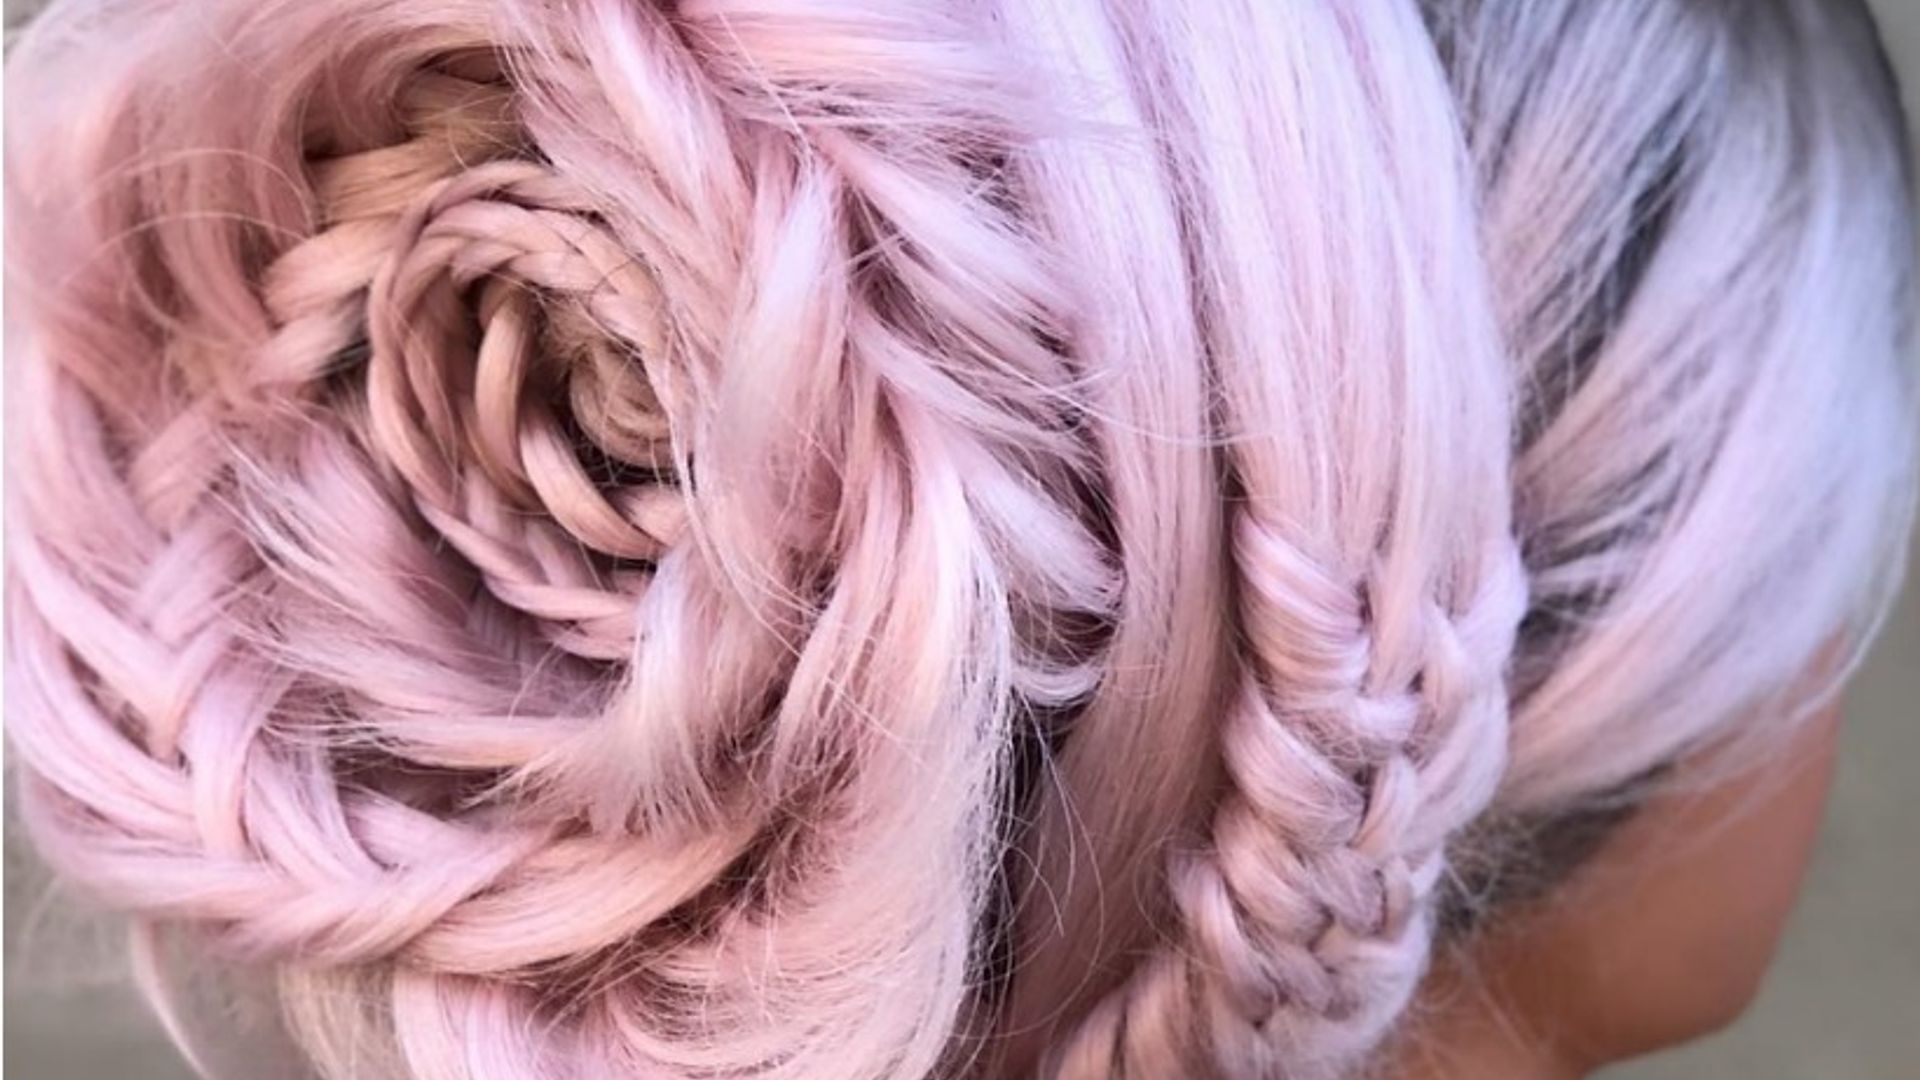 braided-rose-hair